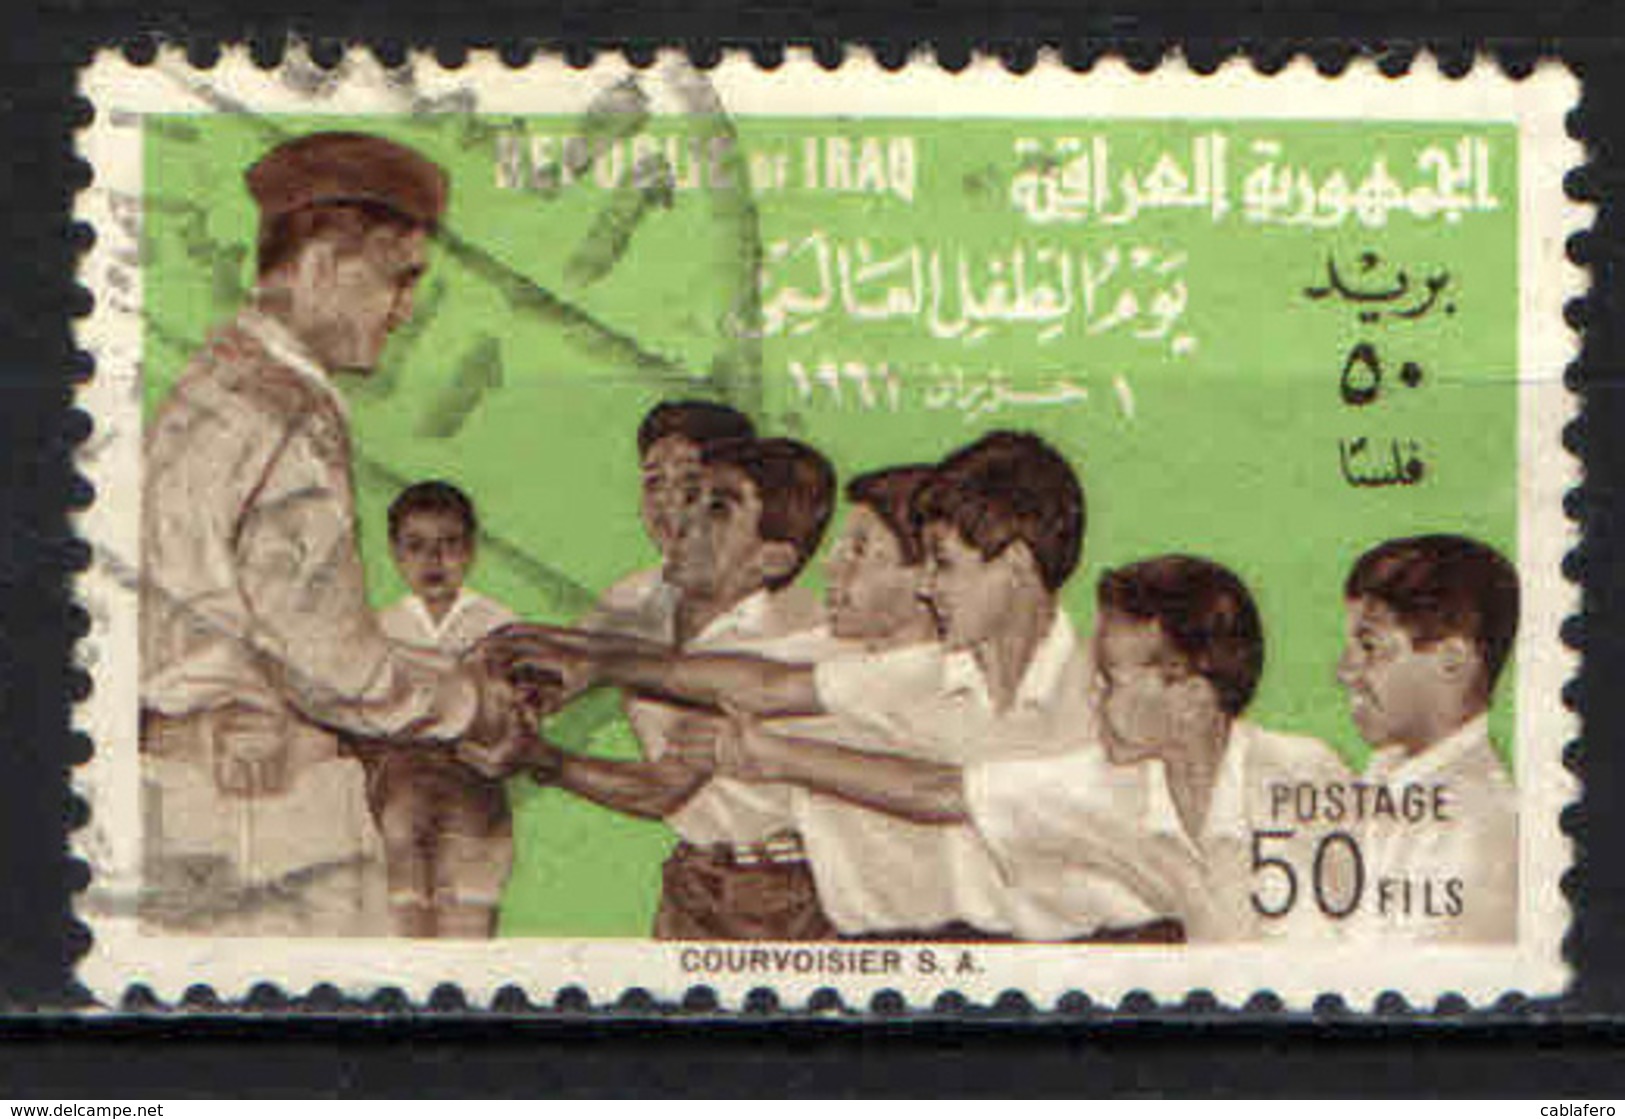 IRAQ - 1961 - GIORNATA MONDIALE DEL FANCIULLO - ABDUL KARIM KASSEM - USATO - Iraq